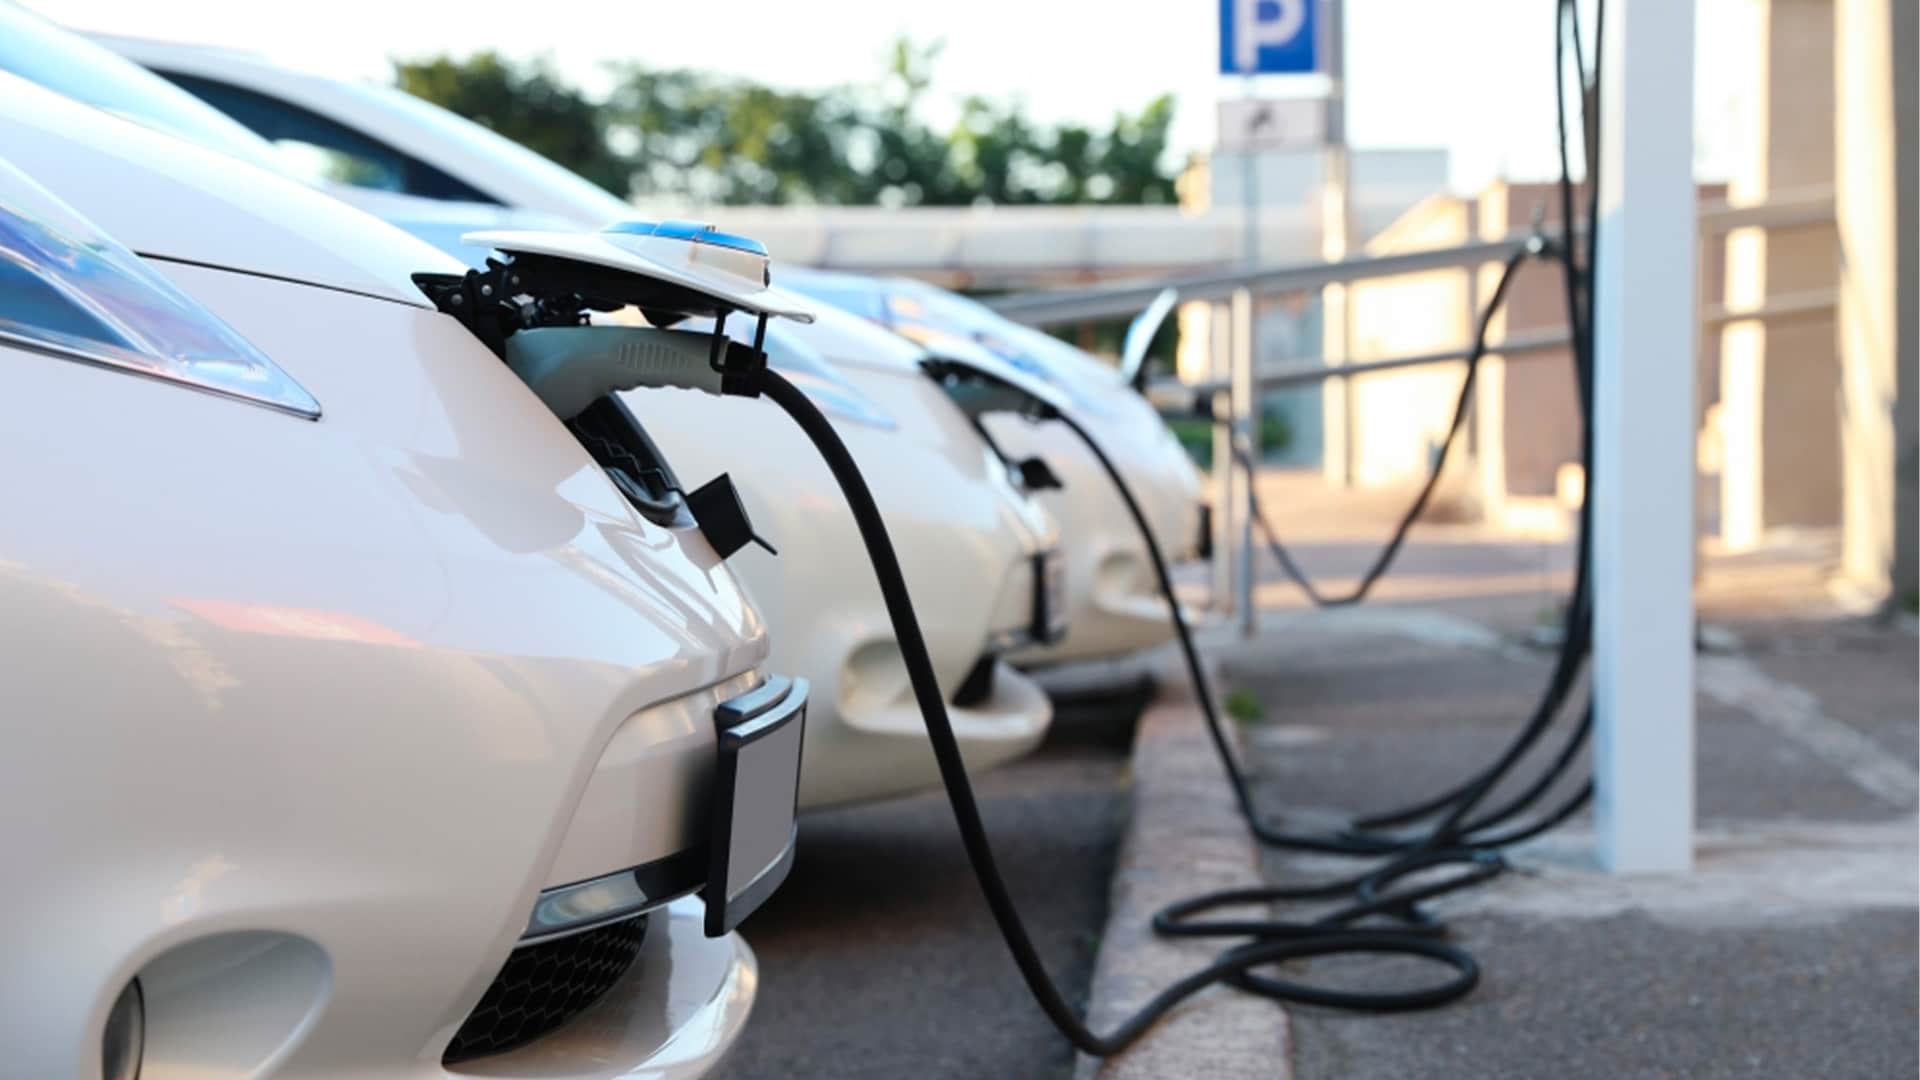 بزرگتر، بهتر، سبزتر: باتری جدید EV از سوئد برای کاهش وابستگی جهان به چین